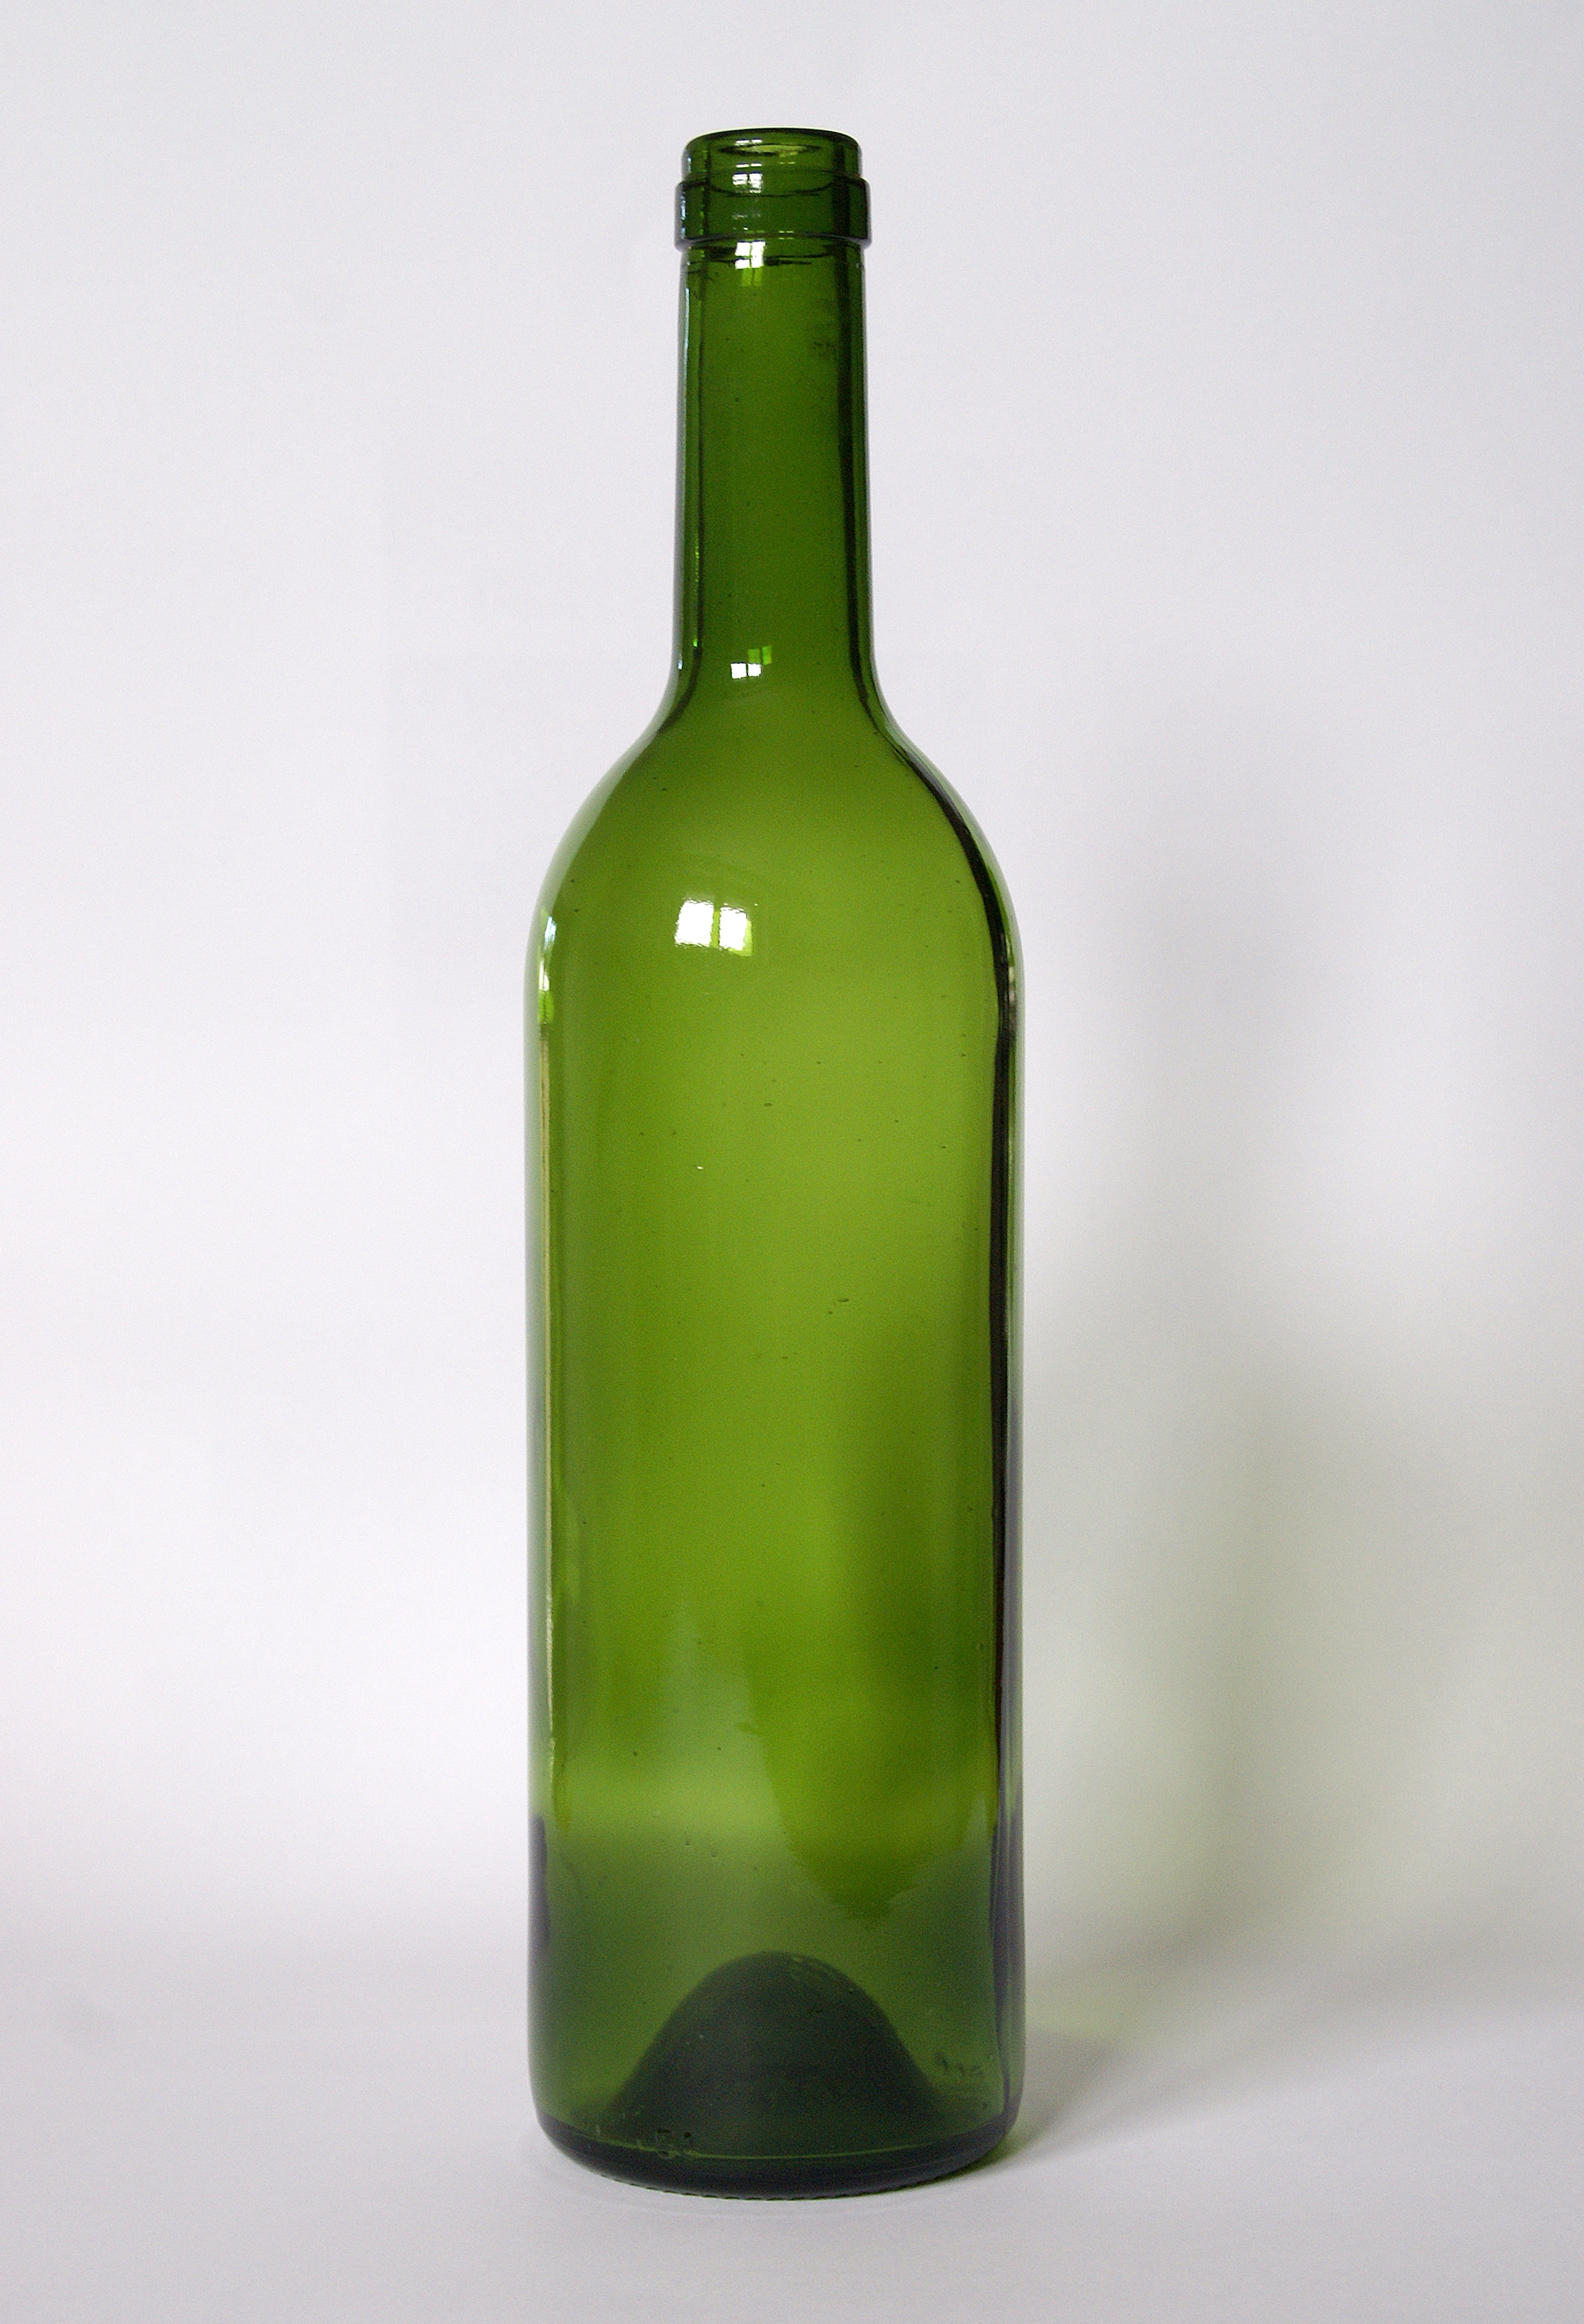 File:Empty Wine bottle.jpg - Wikimedia Commons